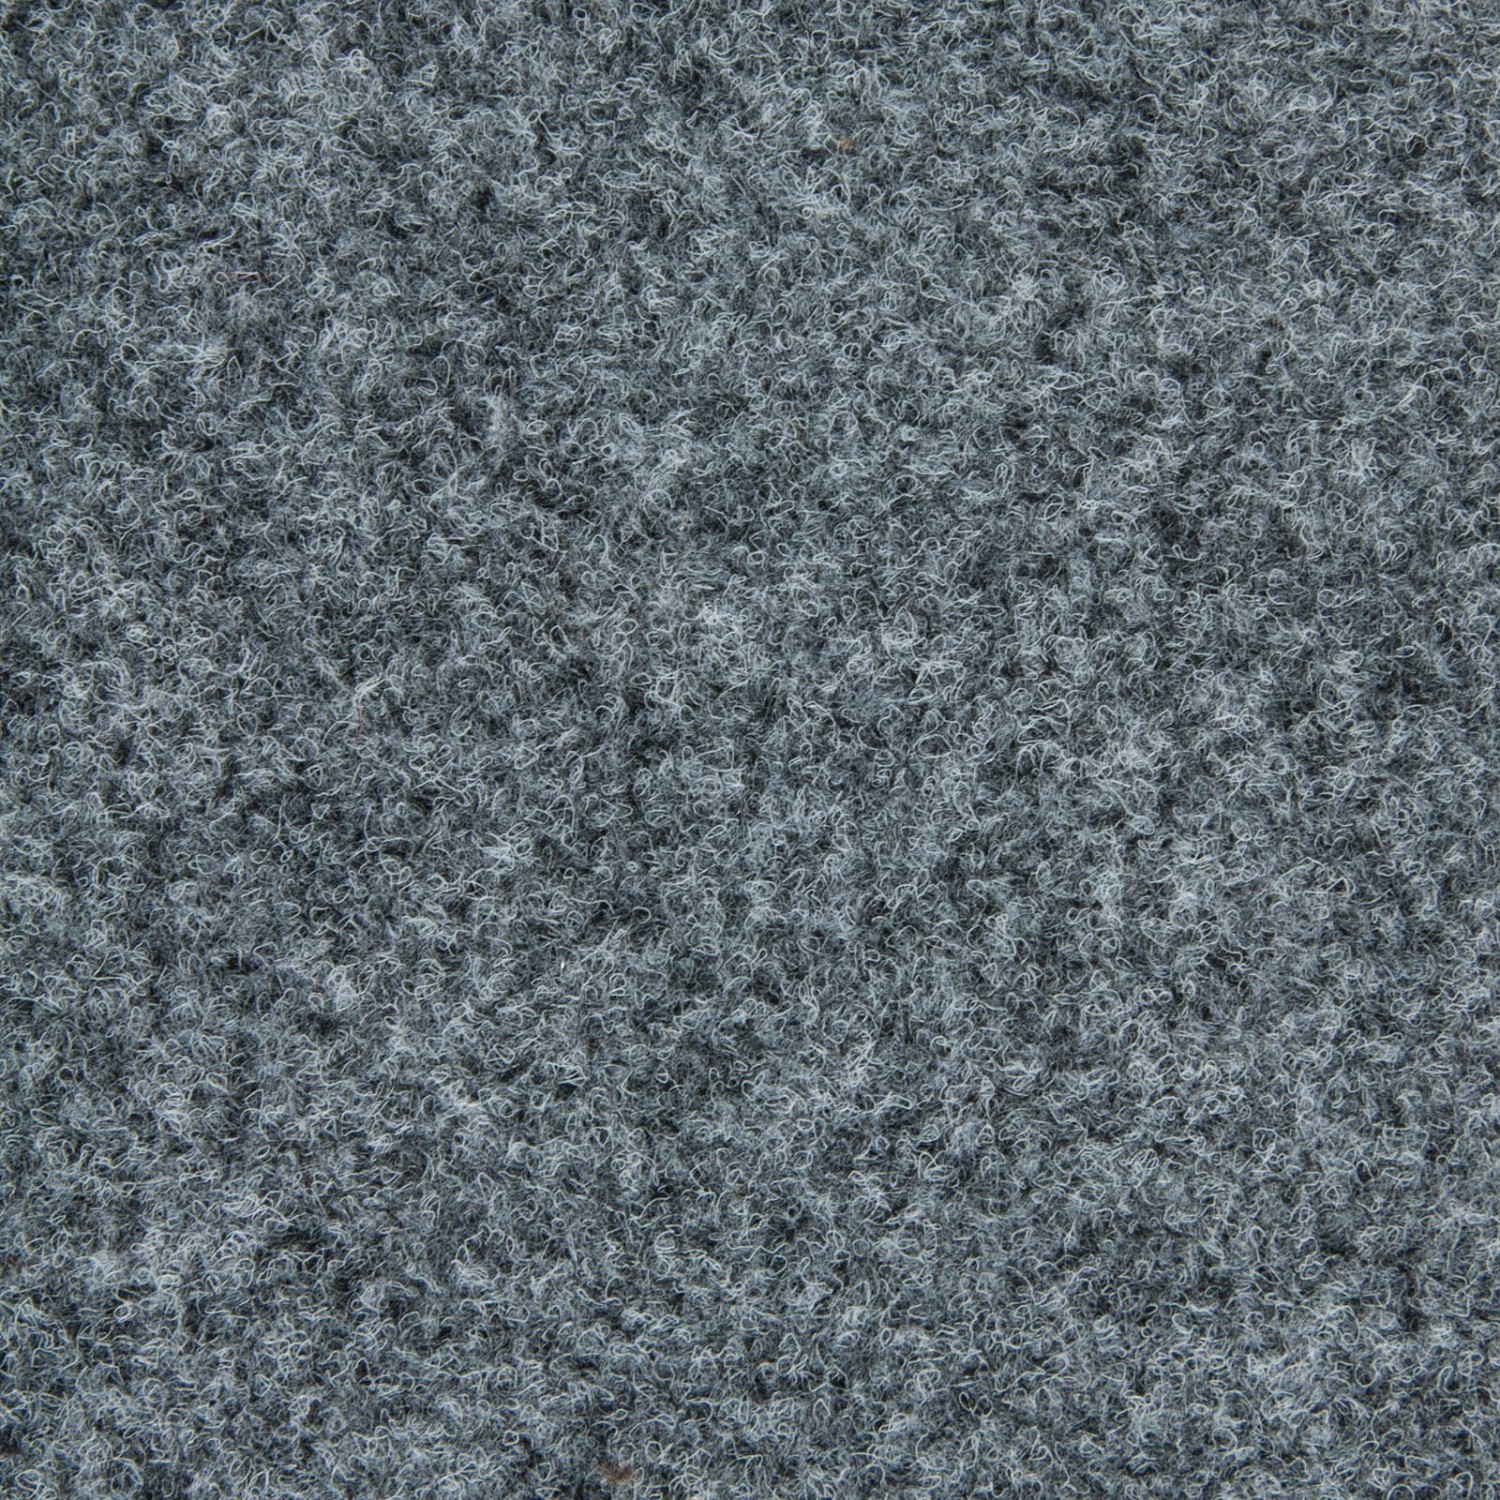 Schatex Schatex Teppichfliesen Grau Für Büro Selbstliegende Teppich Fliesen Hellgrau In 50x50 Cm Nadelfilz Teppichbodenf